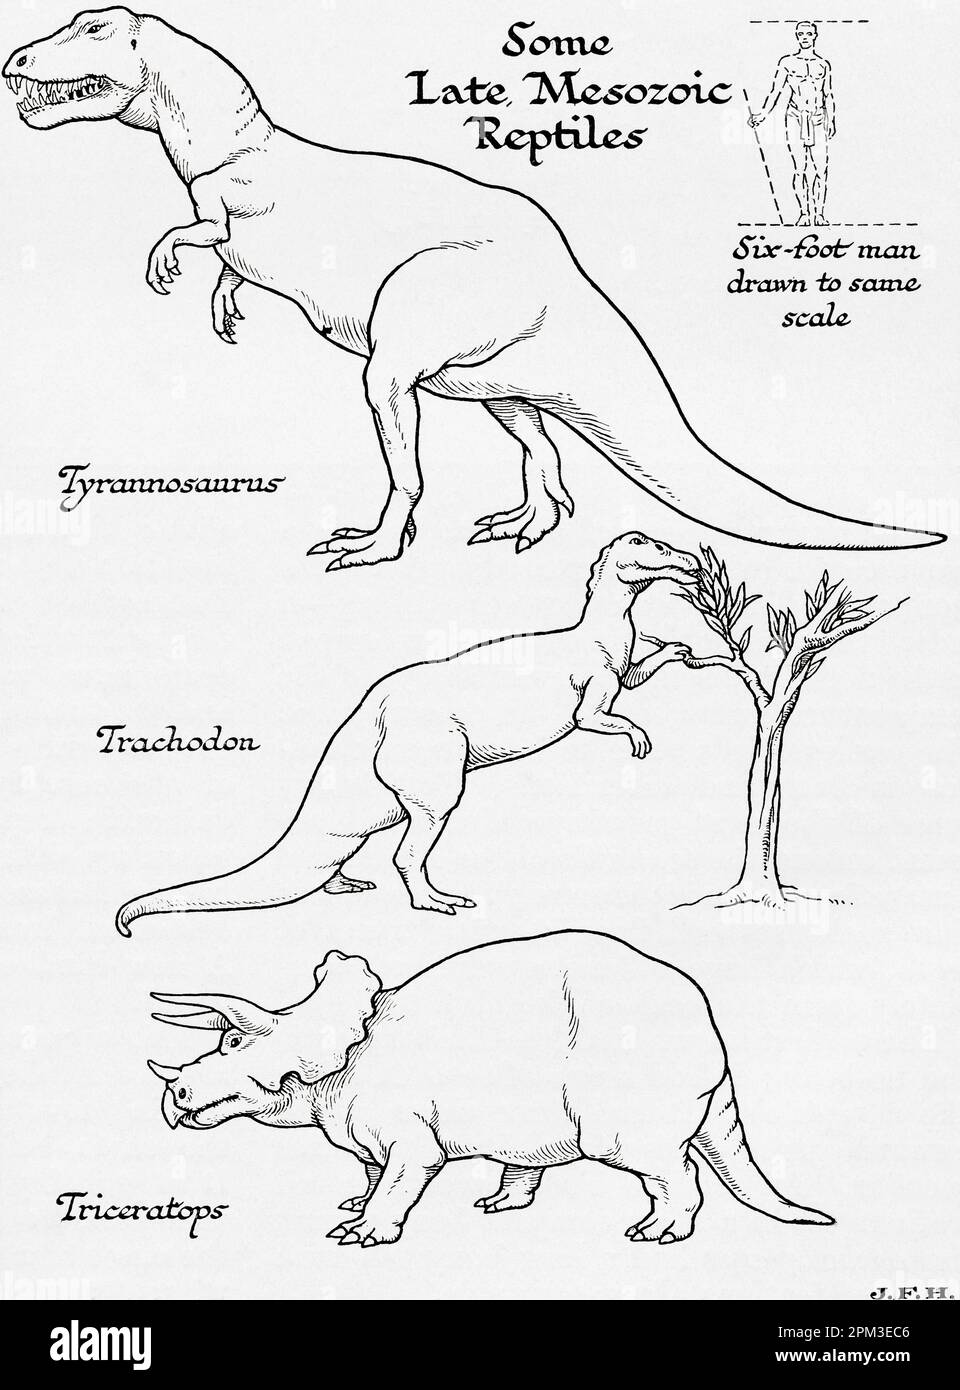 Reptilien aus der späten Mesozoik. Tyrannosaurus, Trachodon und Triceraptops. In der Abbildung ist ein 1,80 m großer Mann dargestellt, der auf die gleiche Skala wie andere Figuren gezeichnet ist. Aus dem Buch Outline of History von H.G. Wells, veröffentlicht 1920. Stockfoto